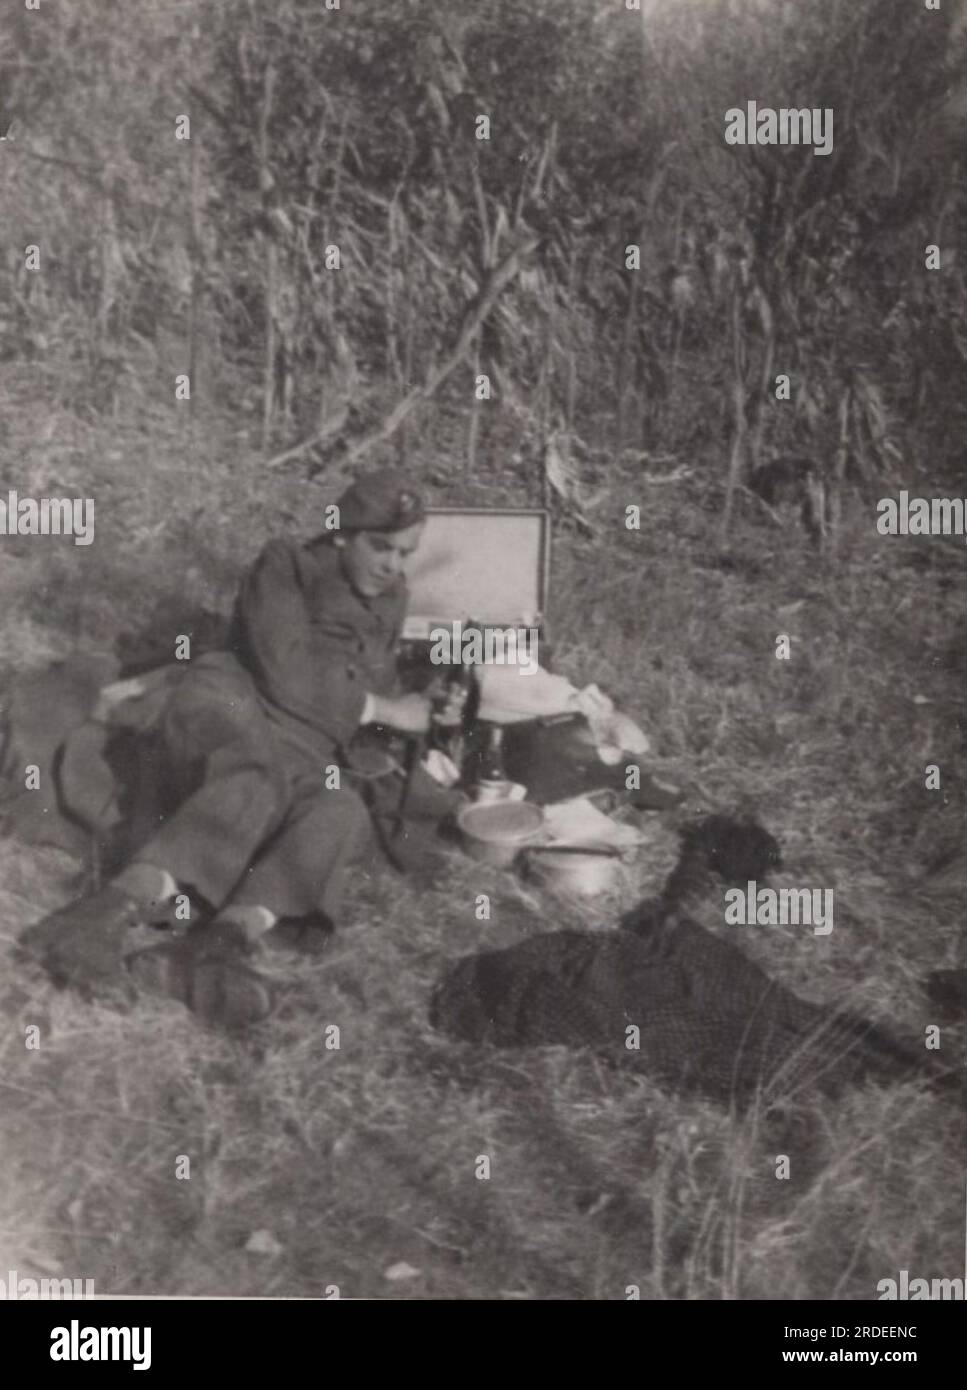 Seltenes Foto des Militärlebens aus dem Zweiten Weltkrieg ( WW2) ein Soldat legt sich auf den Rasen, um sich auszuruhen. Er isst zu Mittag. Essen Sie im Kriegsgebiet kaltes Essen. Stockfoto